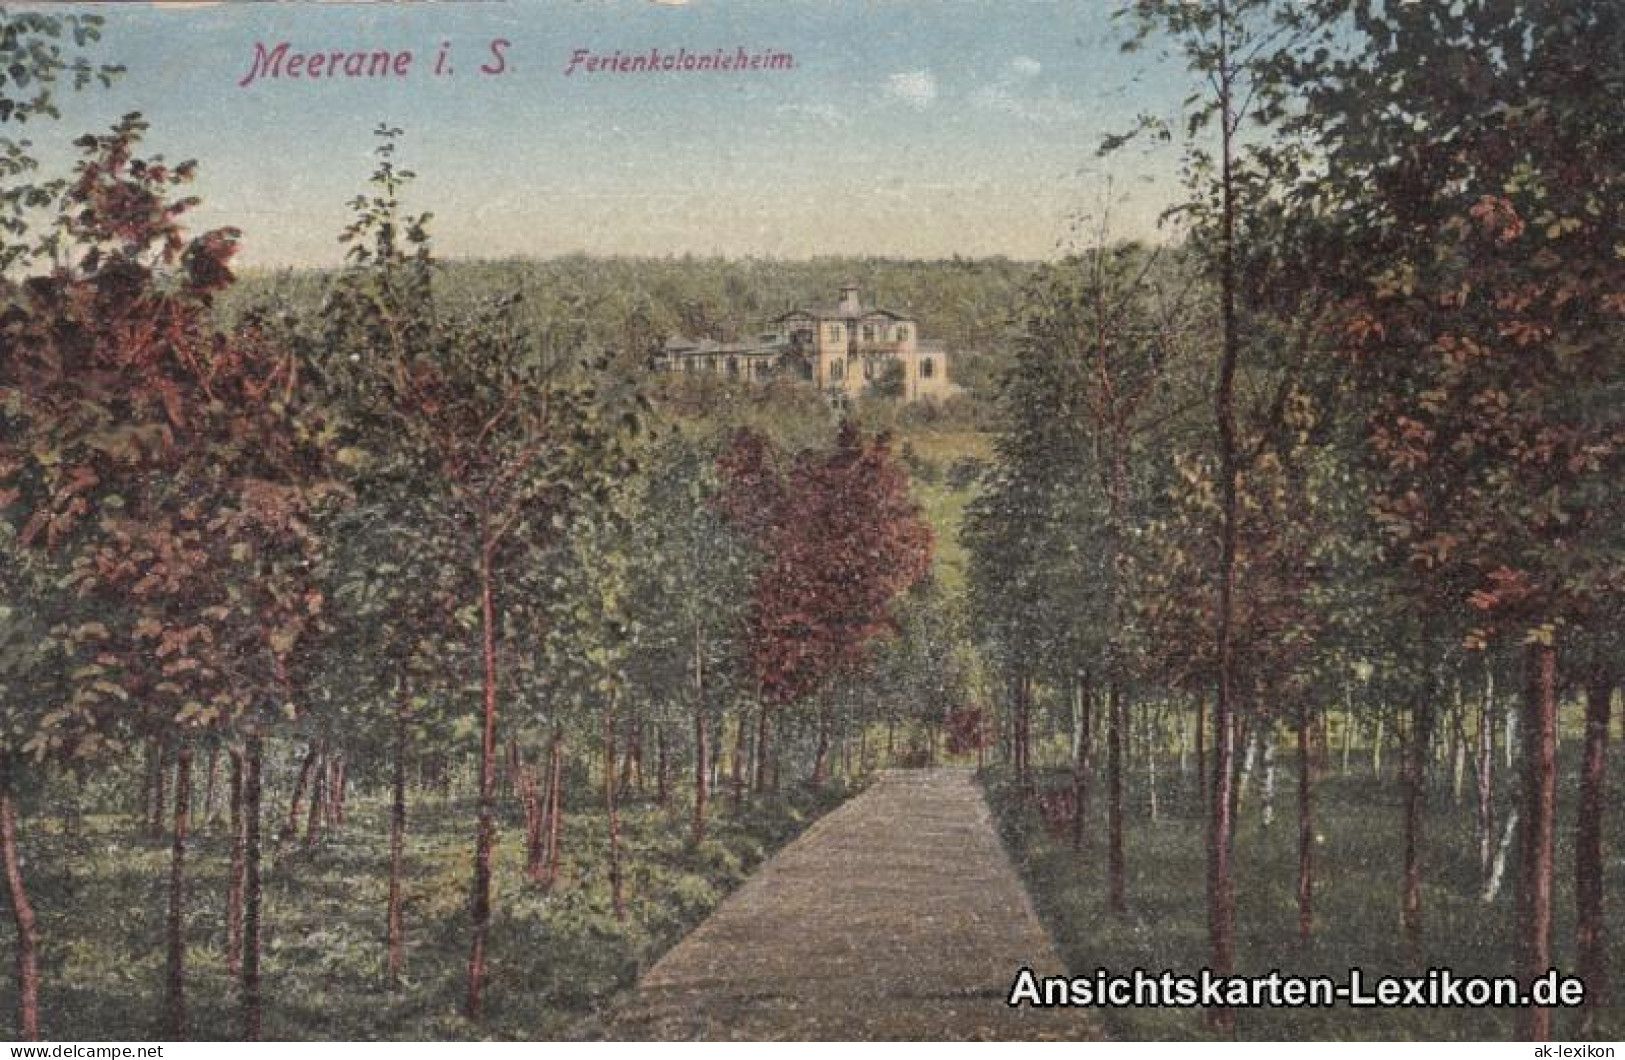 Ansichtskarte Meerane Ferienkolonieheim 1916  - Meerane